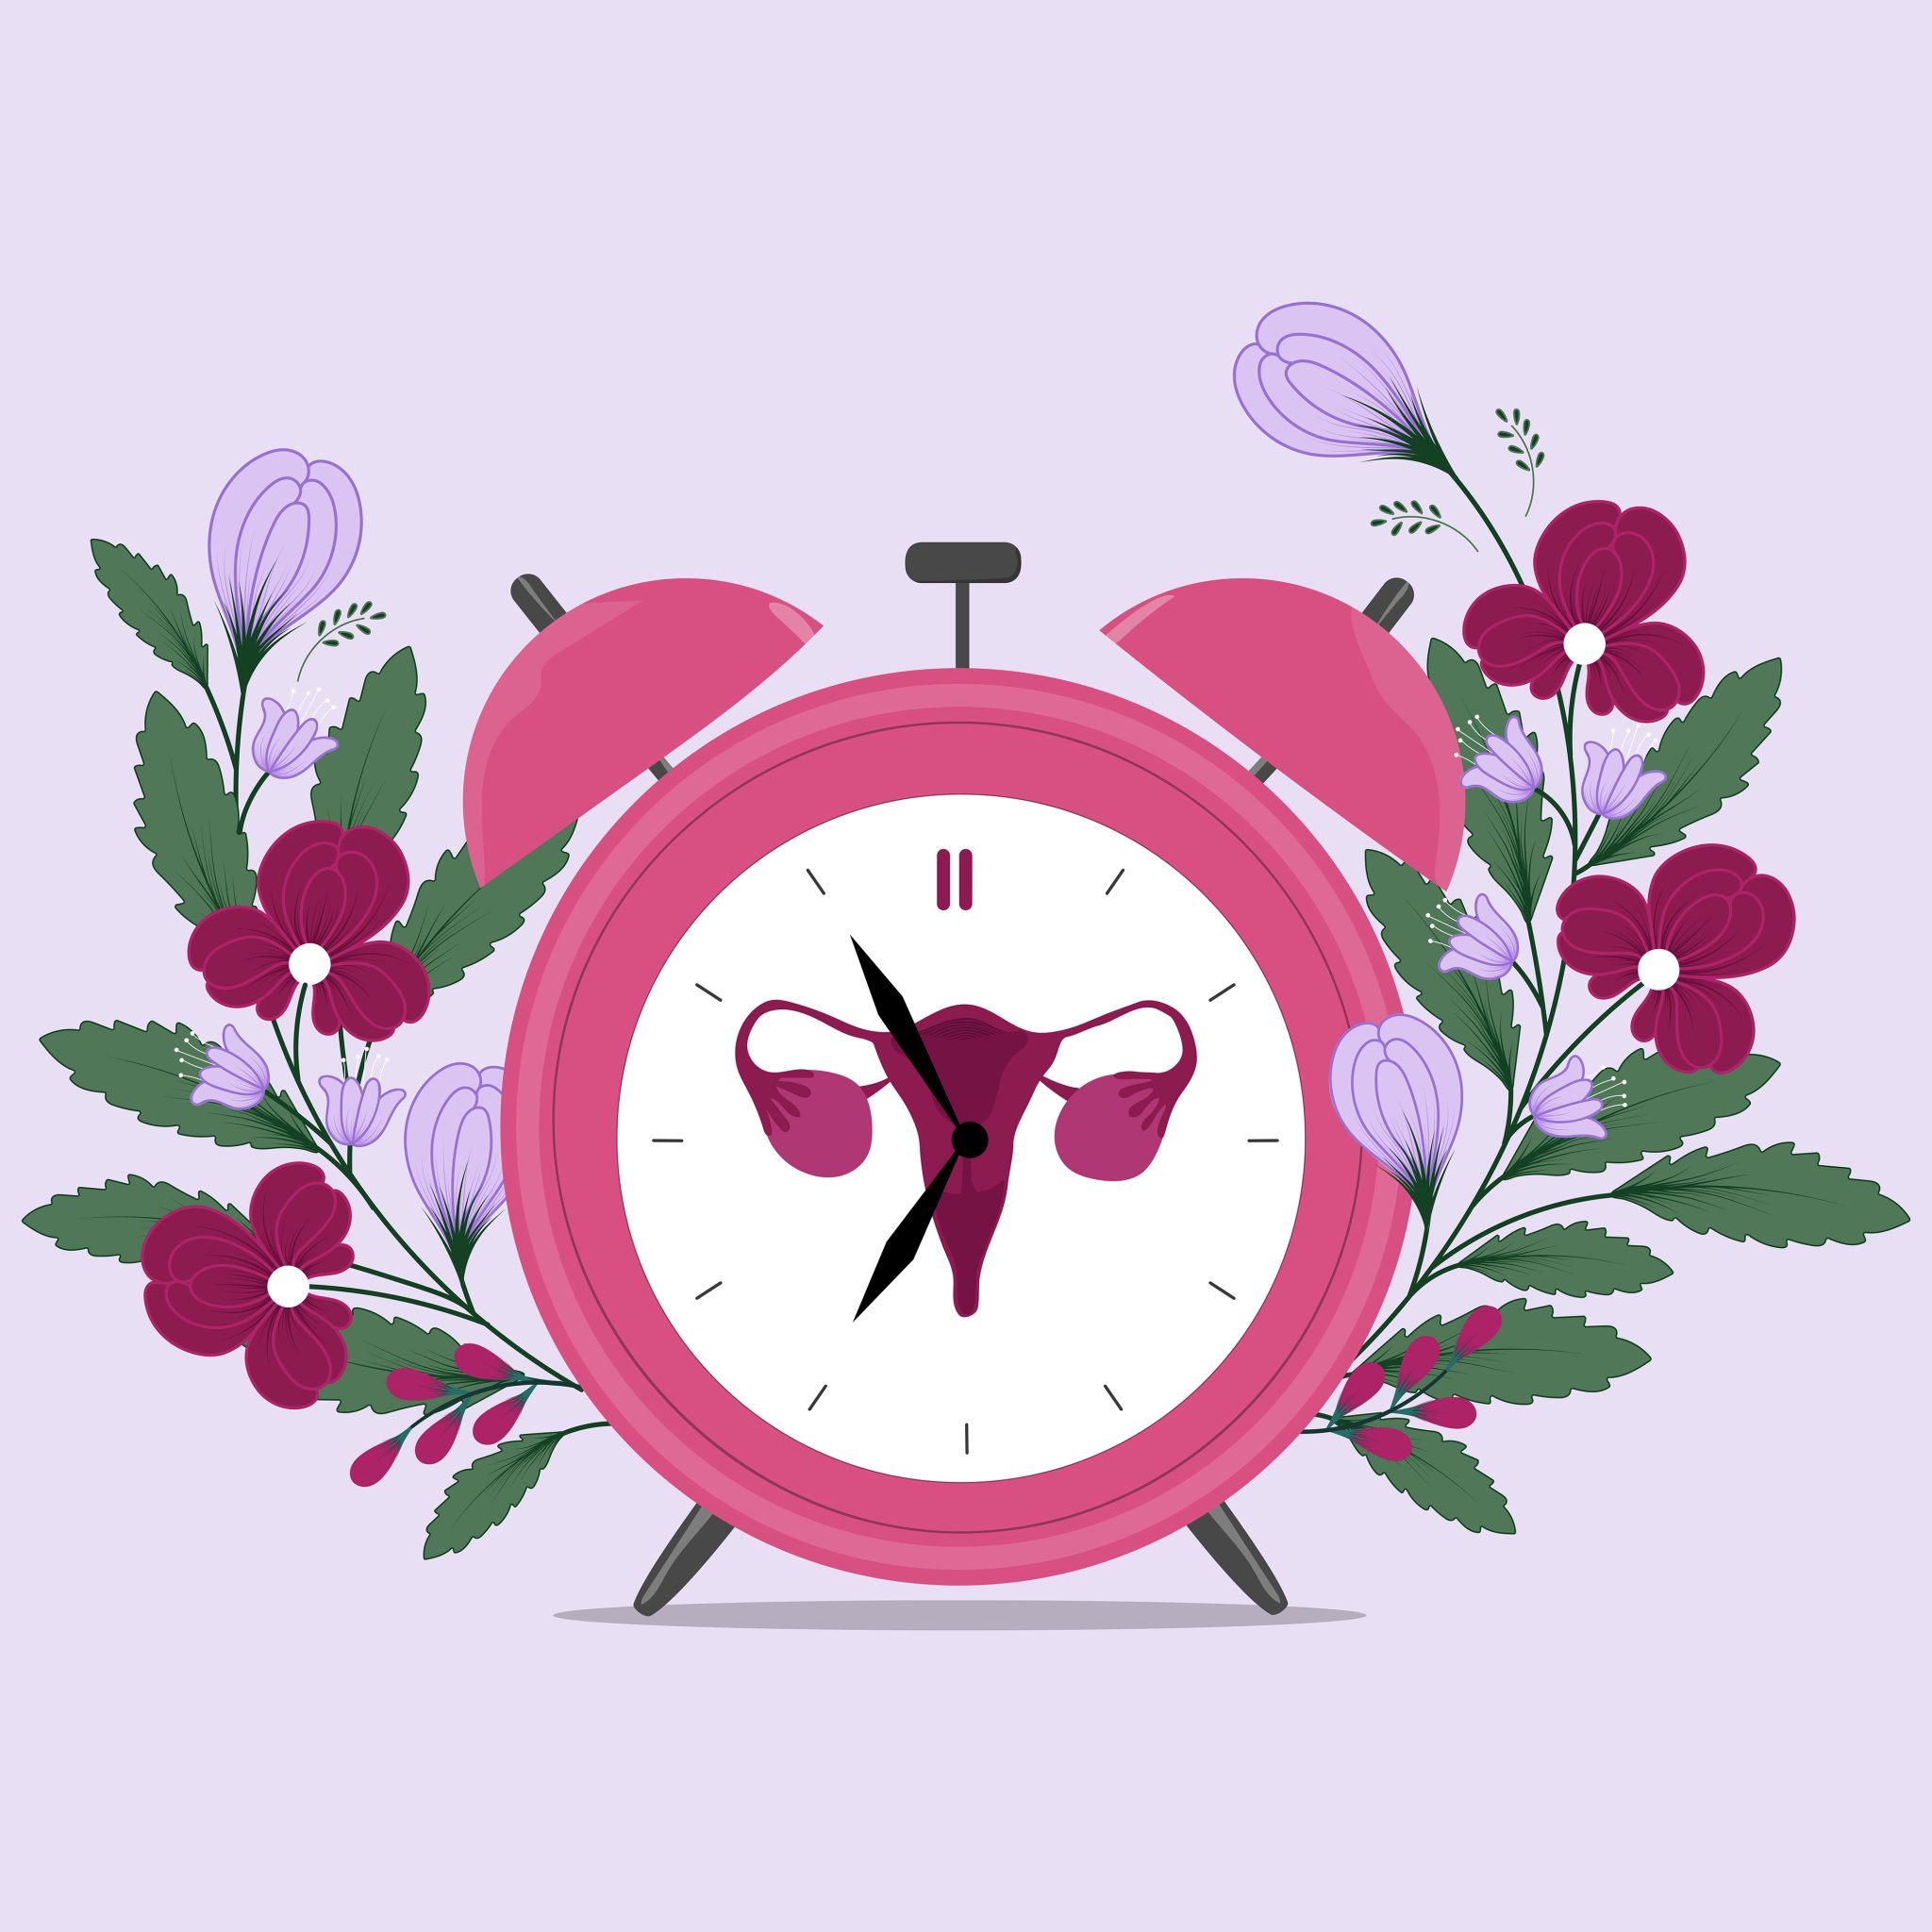 menstrual clock